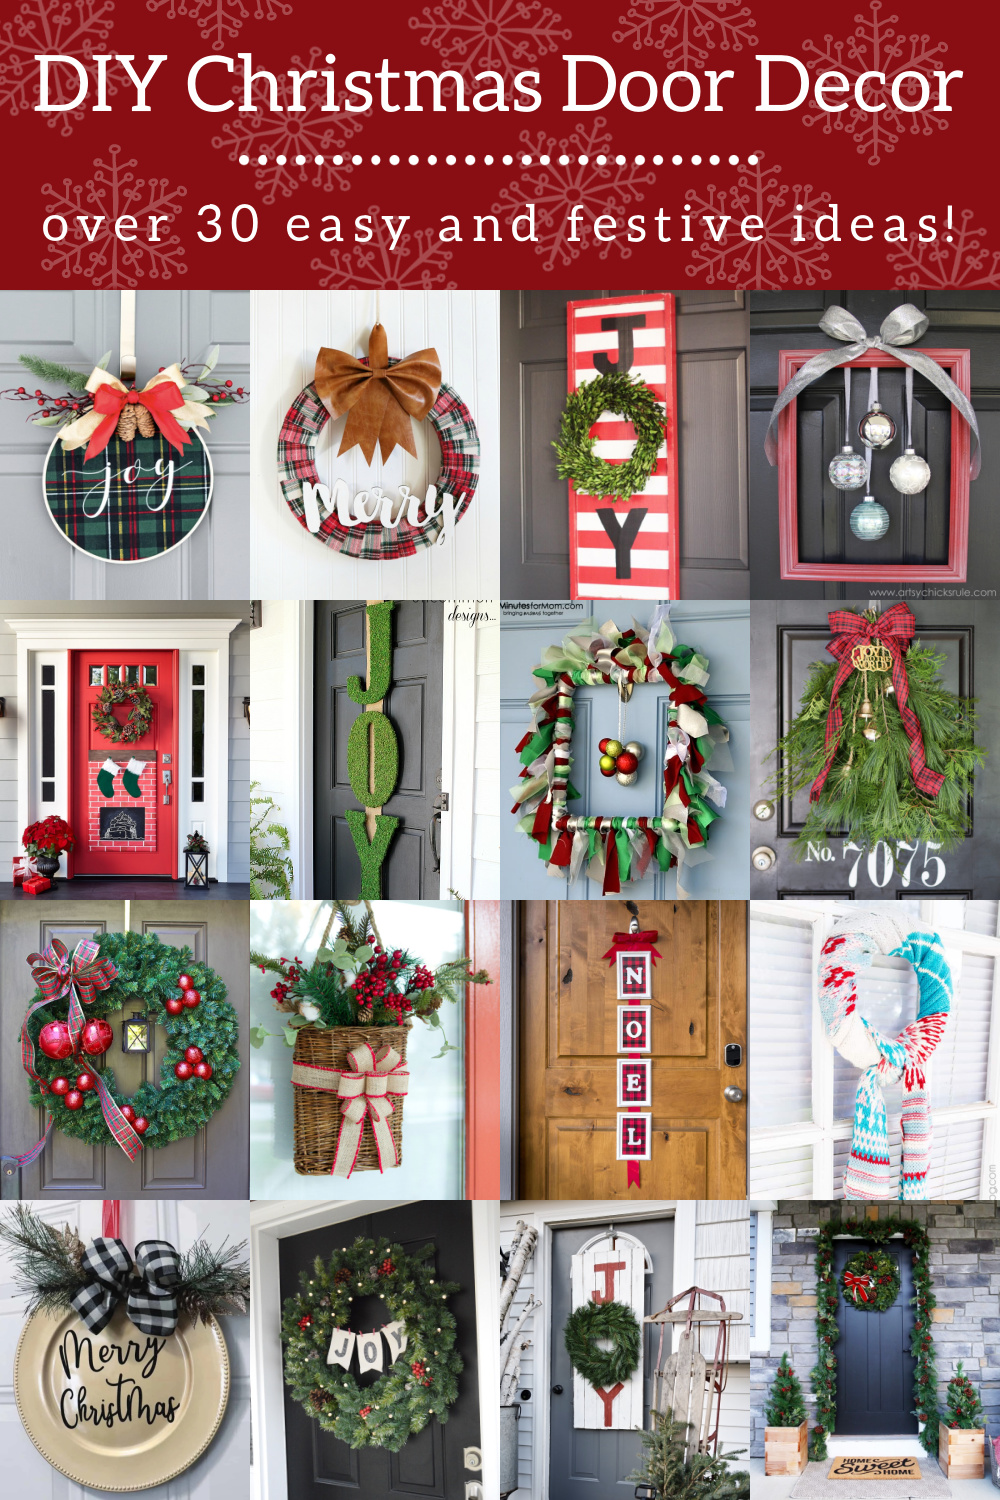 Holiday Cheer Welcome Here Christmas Reindeer Door Hanger or Sign